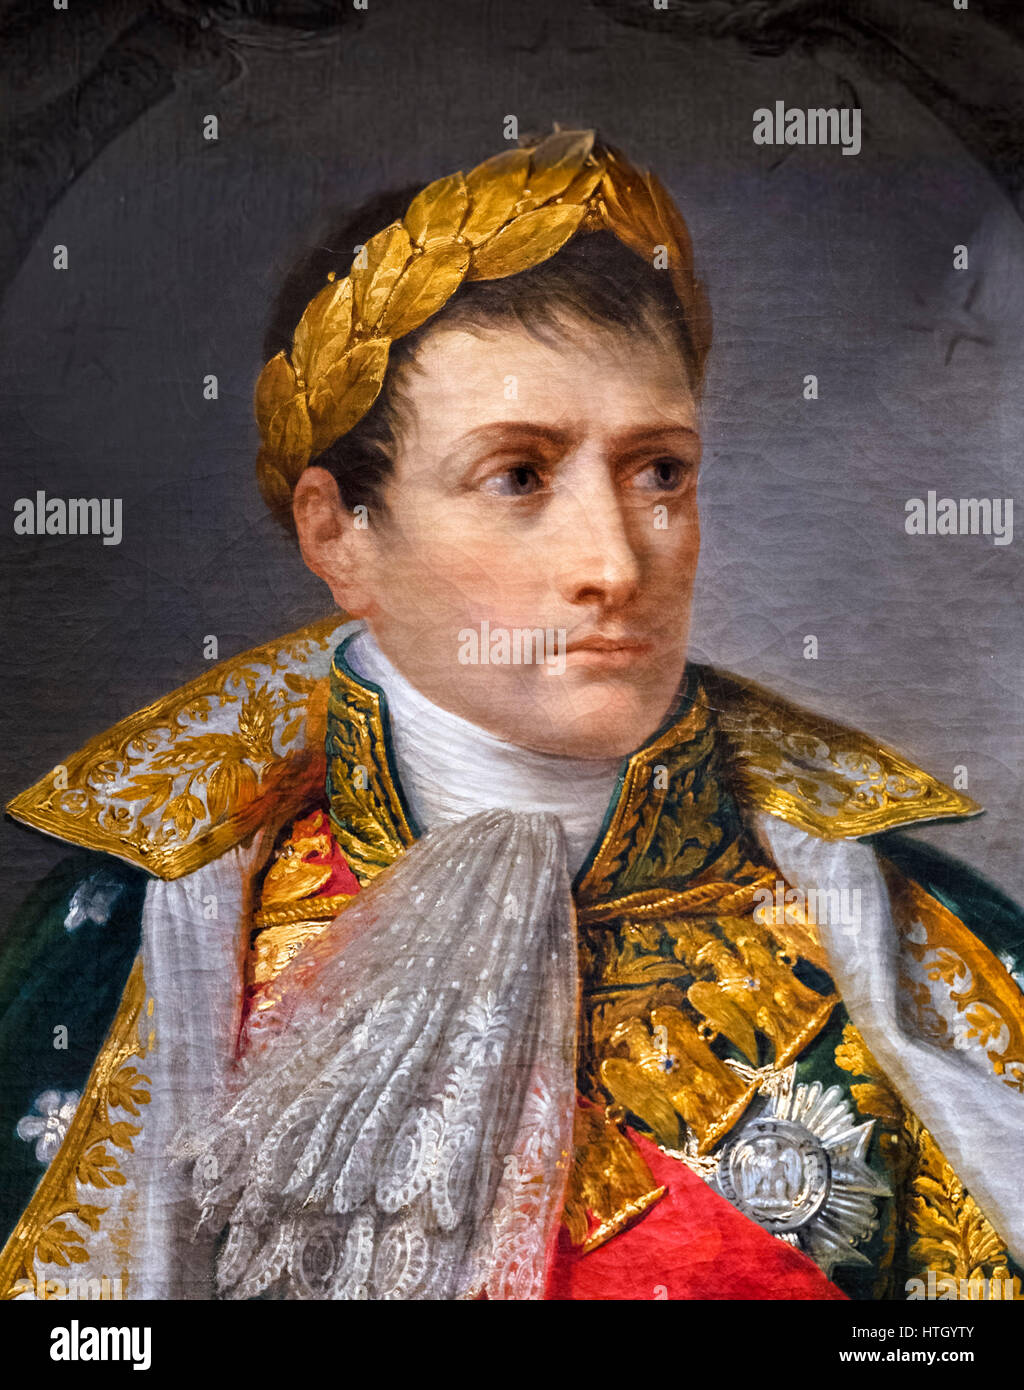 Napoleone Bonaparte come re d'Italia da Andrea Appiani, olio su tela, 1805. Dettaglio di un dipinto di grandi dimensioni, HTGYTX. Foto Stock